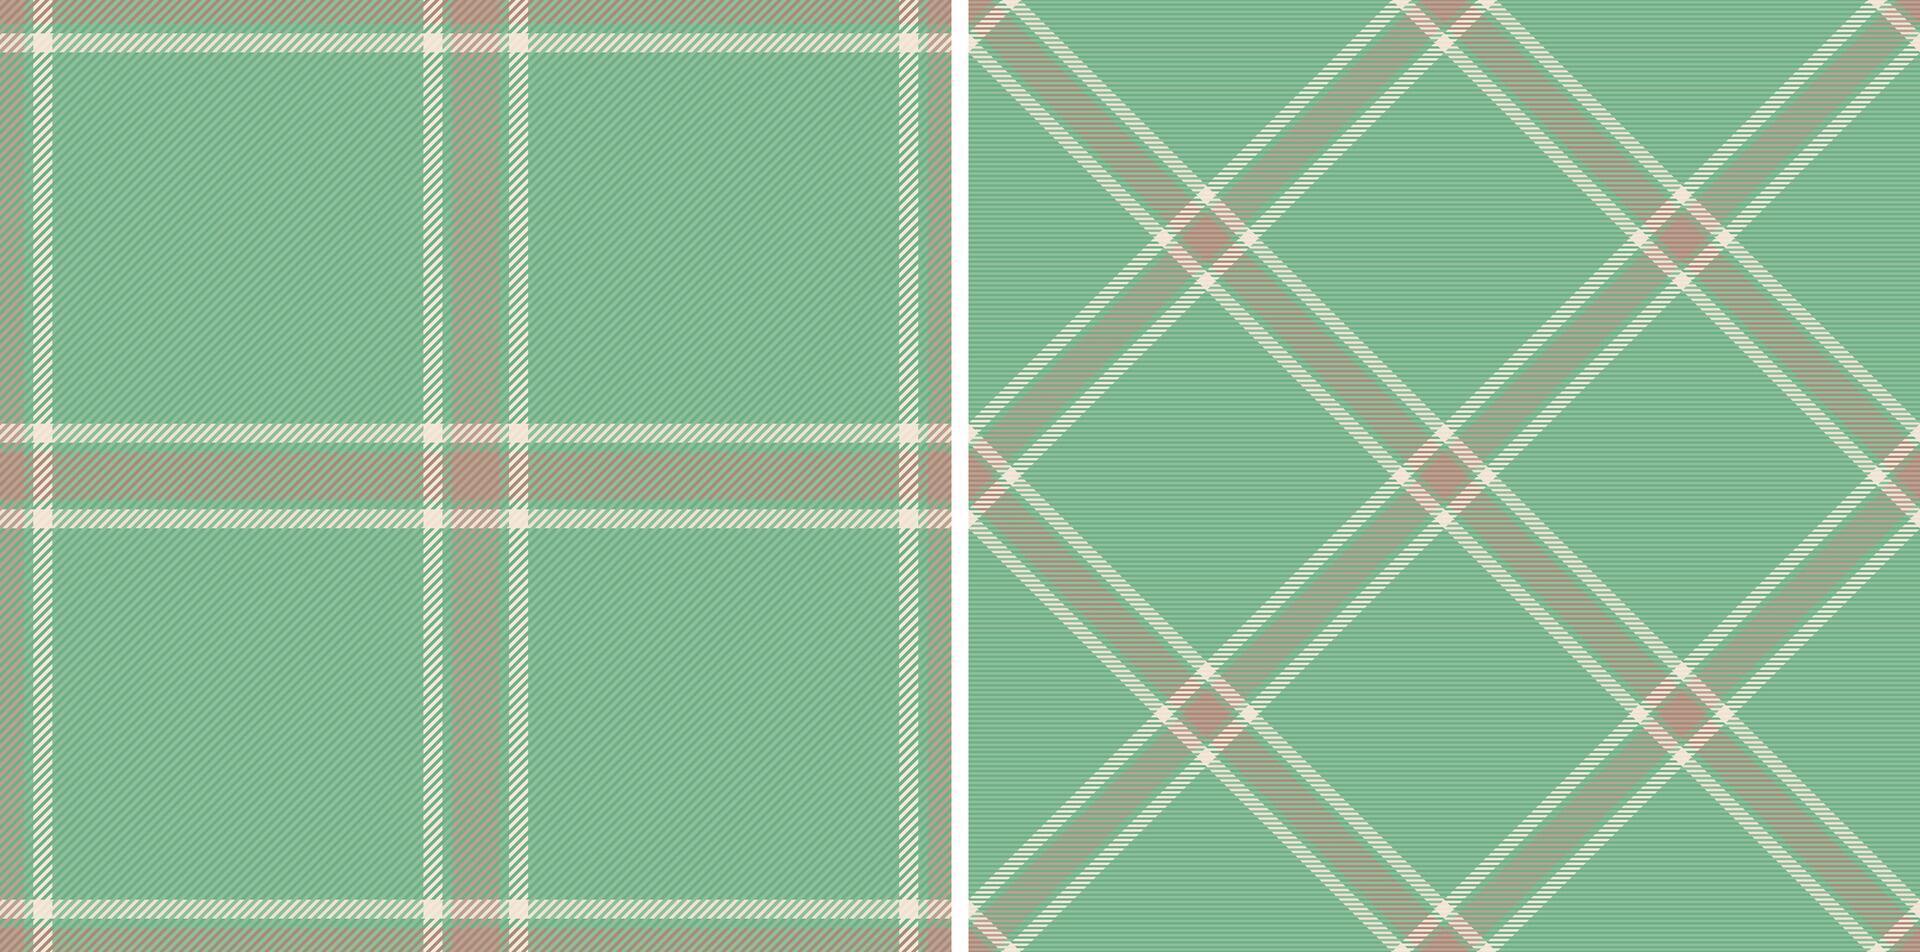 kleding stof textiel van patroon naadloos Schotse ruit met een controleren plaid achtergrond textuur. reeks in natuur kleuren voor school- uniform trends. vector